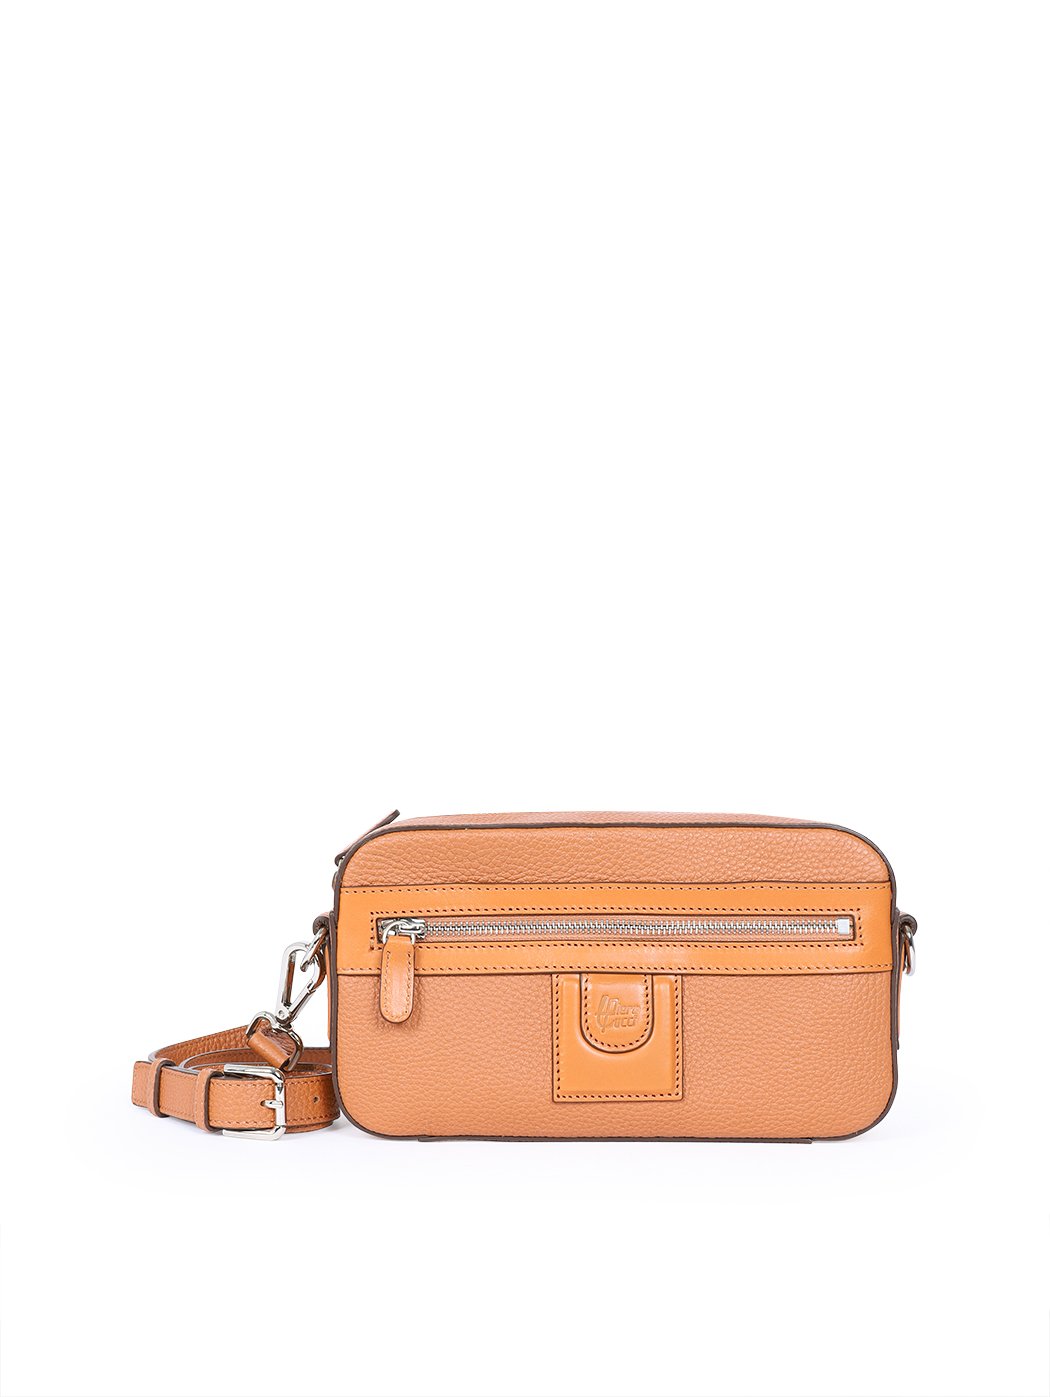 Кожаная сумка барсетка клатч коричневого цвета